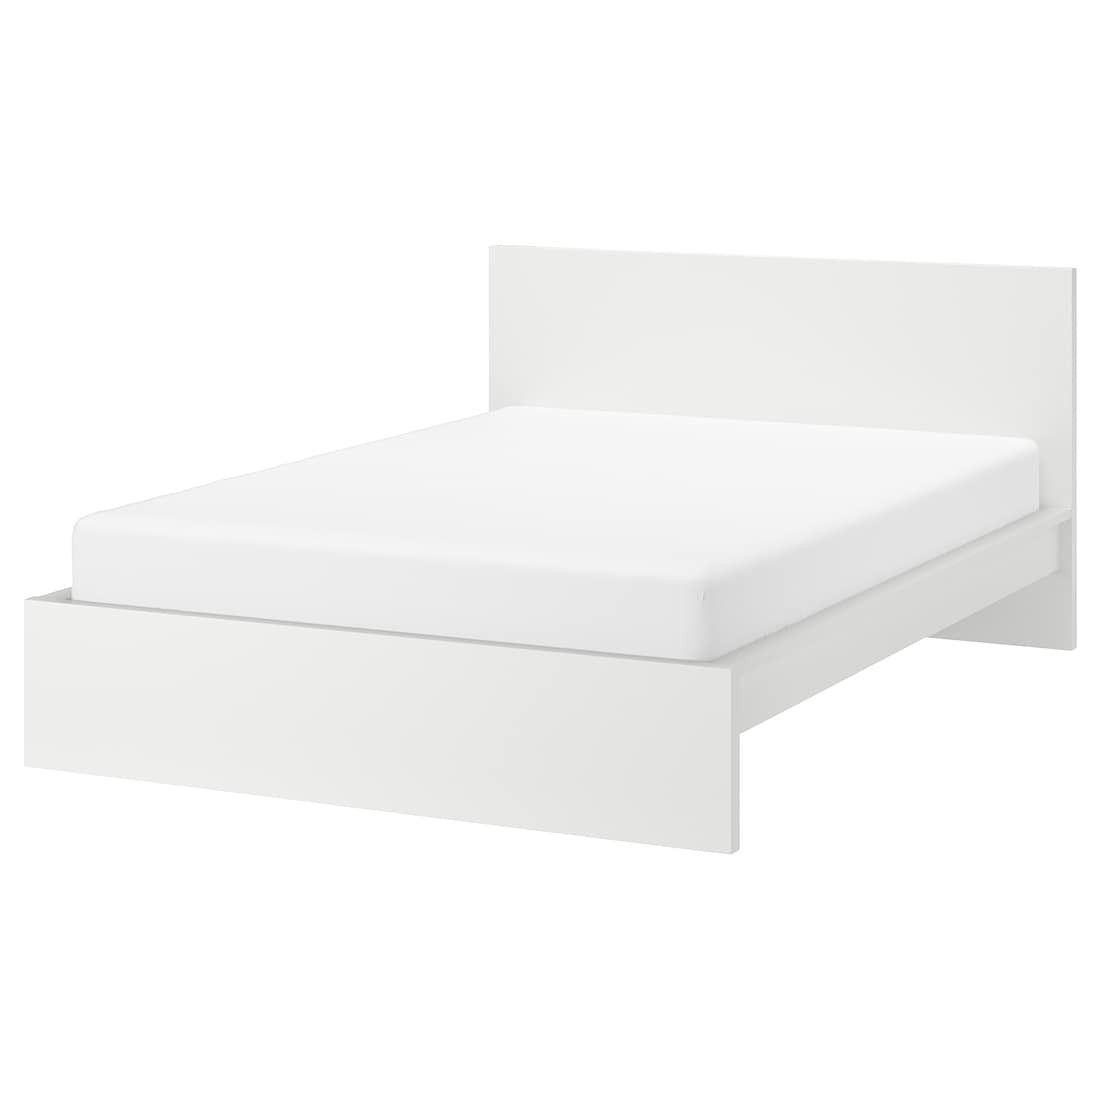 IKEA MALM МАЛЬМ Кровать двуспальная, высокий, белый / Линдбаден, 180x200 см 29494973 294.949.73